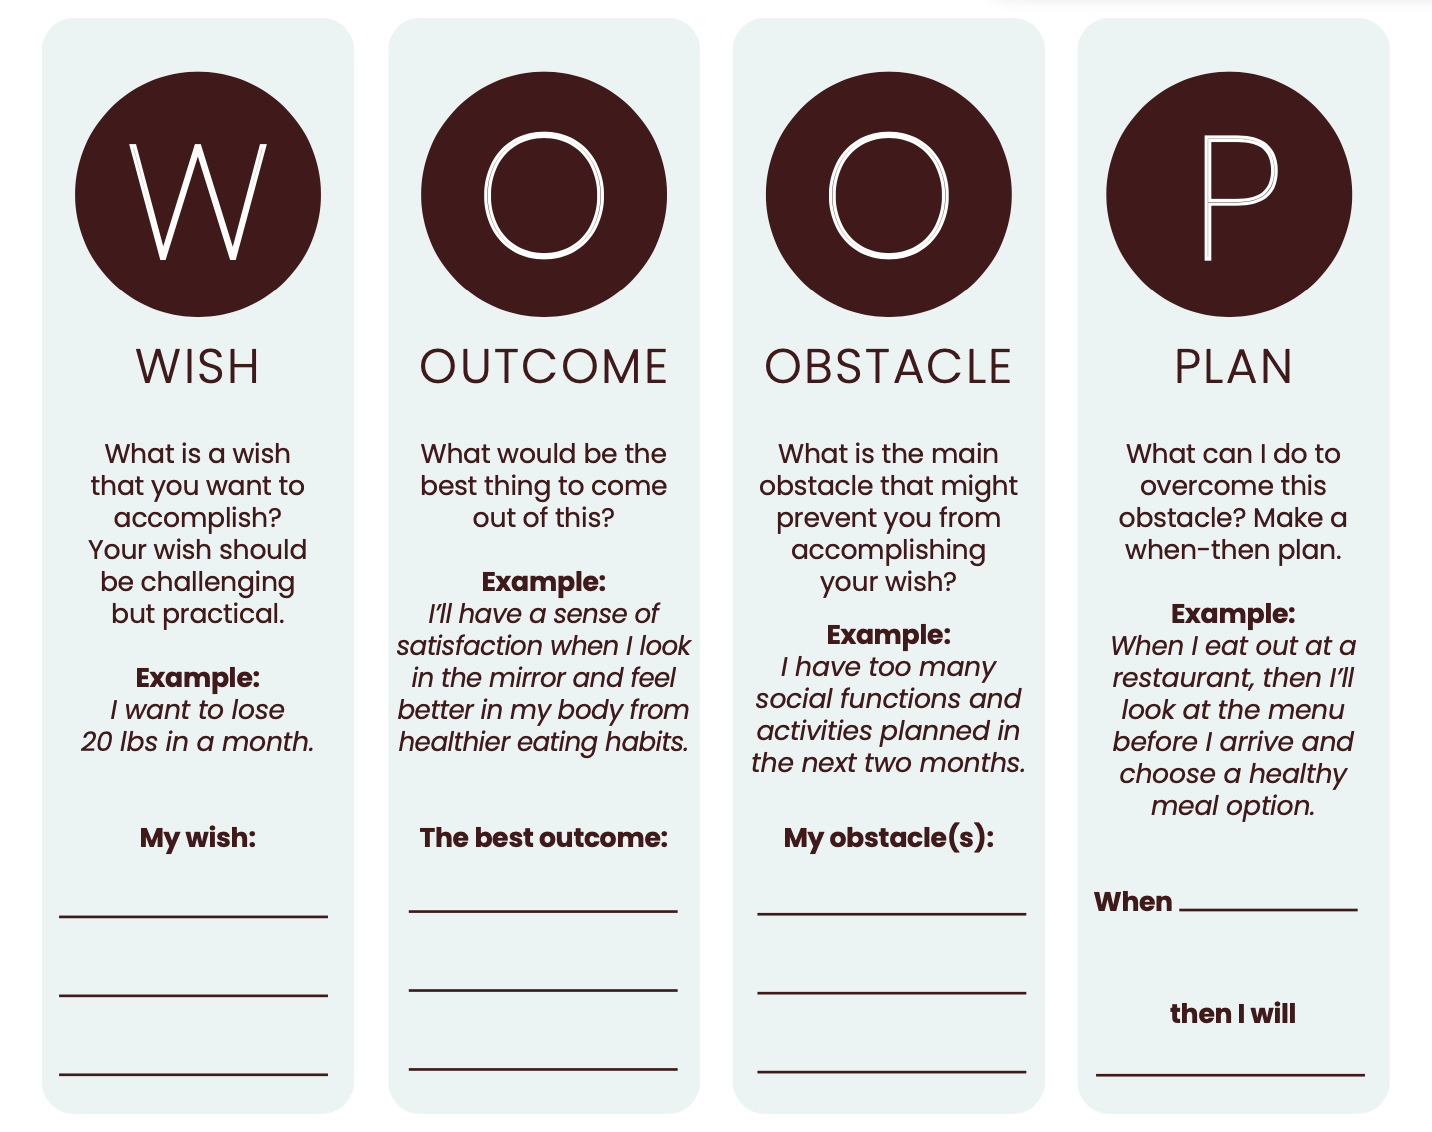 WOOP Method Worksheet